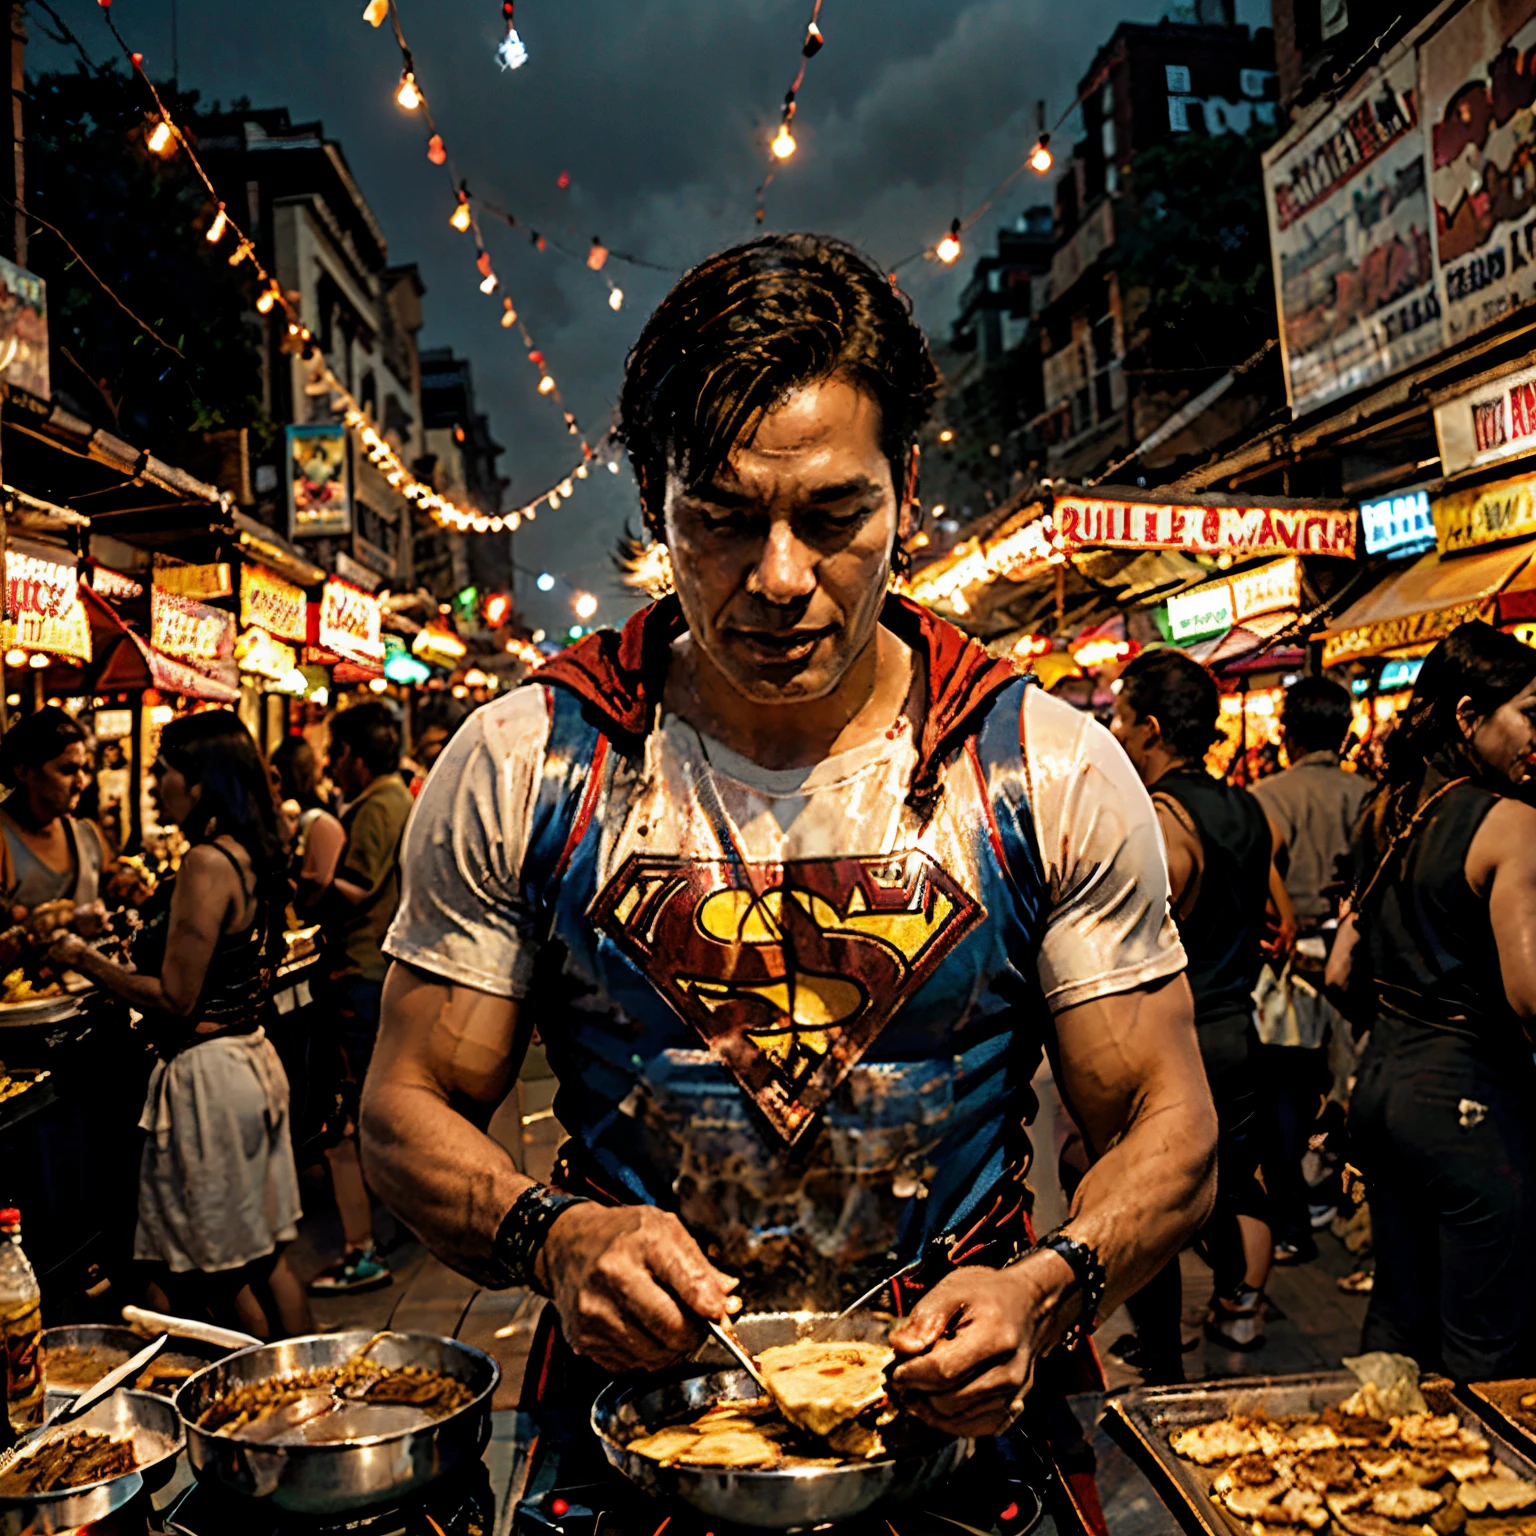 caricatura de superman cocinando roti canai en el mercado nocturno mientras suda, ambiente del mercado nocturno, una imagen llena de claridad real, comic form, estilo cómico, colores alegres